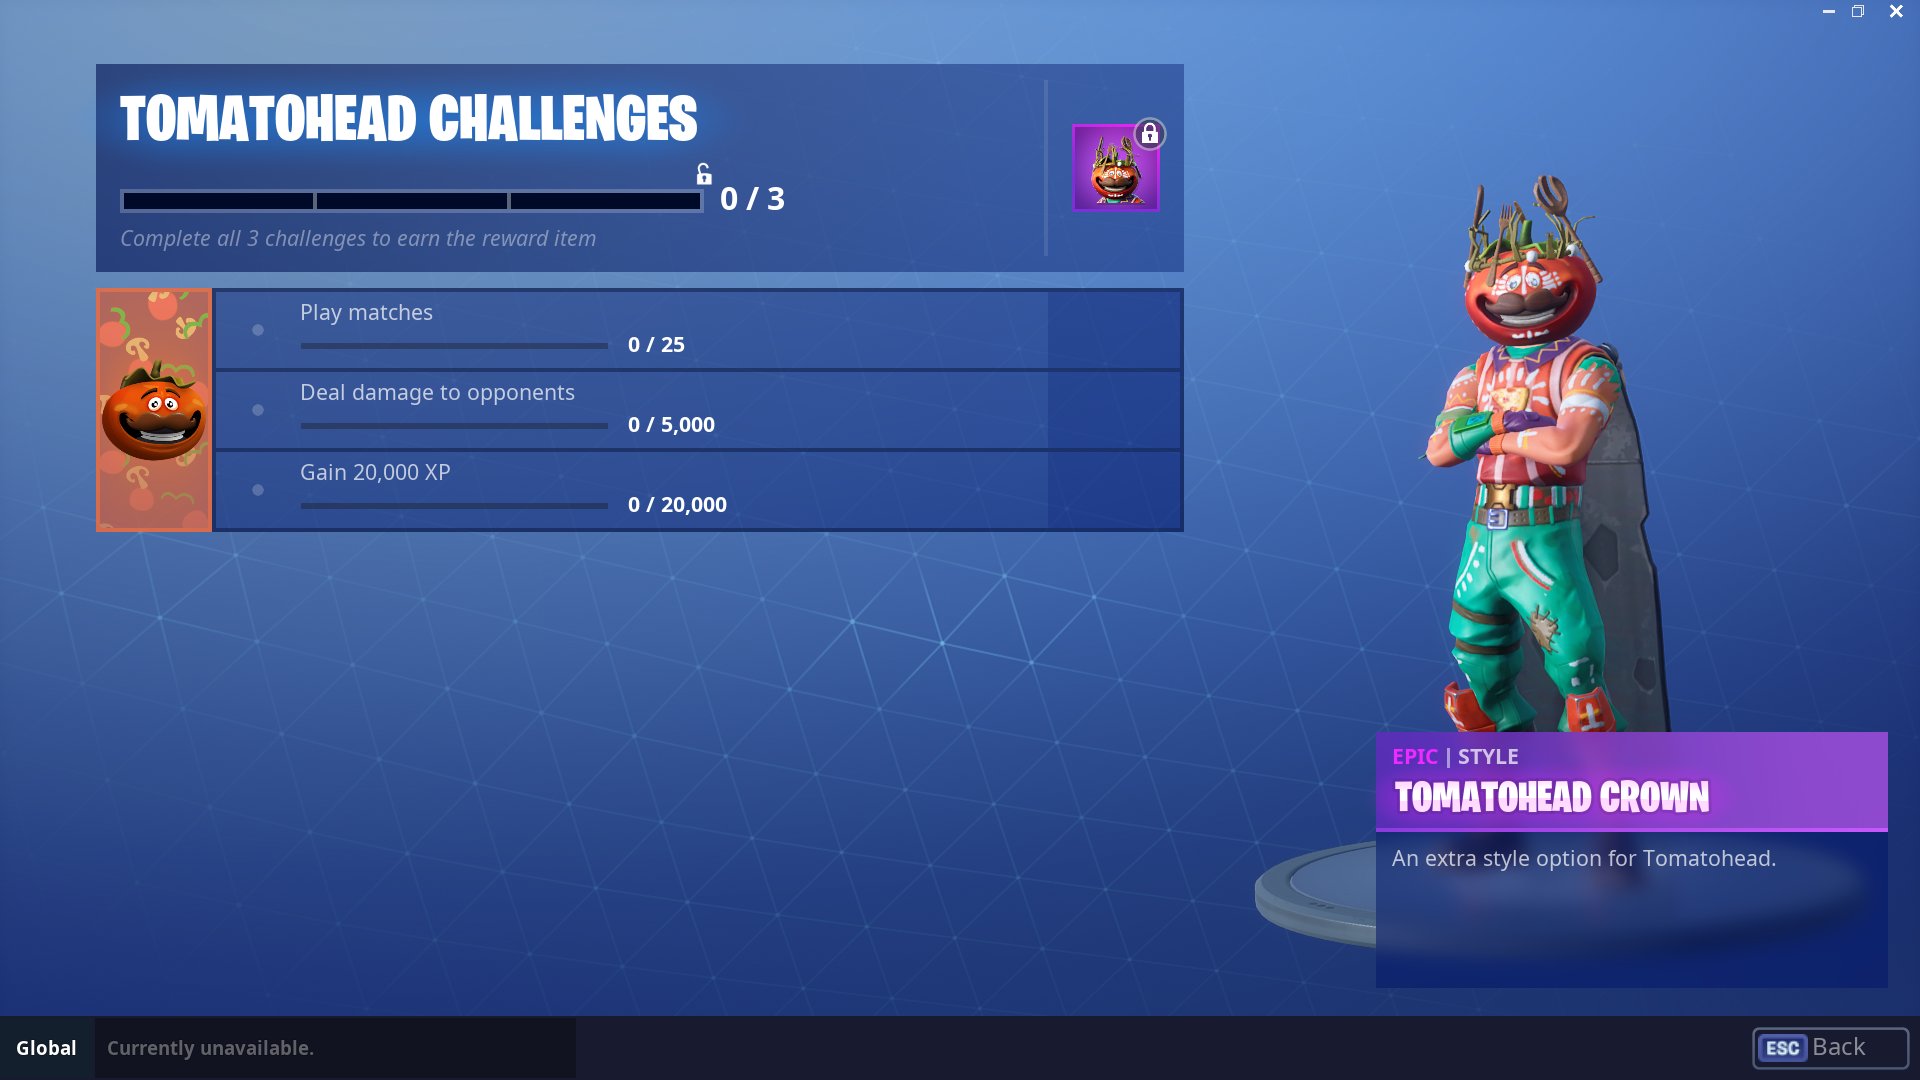 Tomatohead challenges